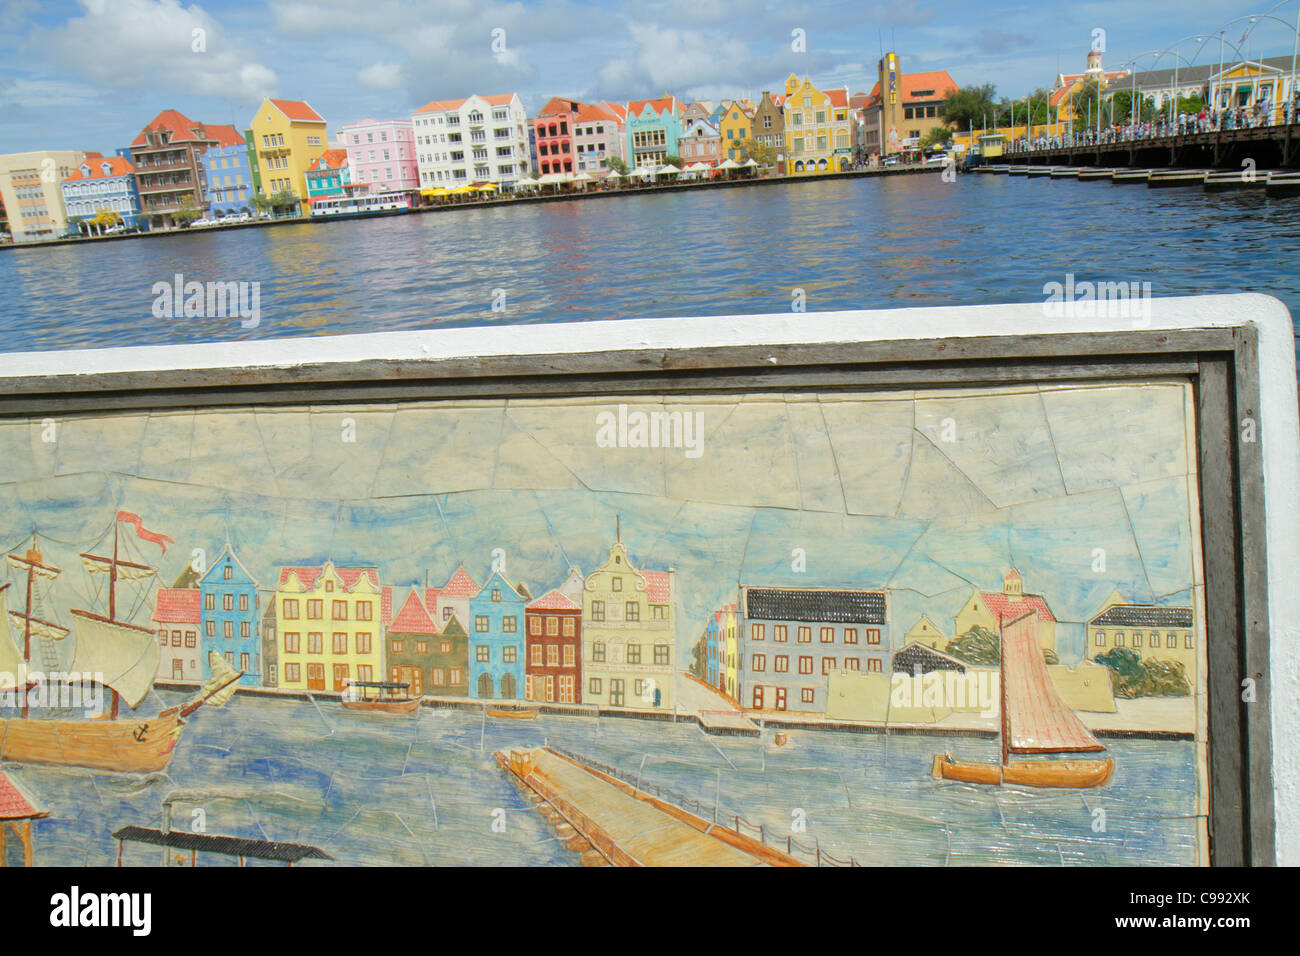 Willemstad Curaçao,pays-Bas Lesse Leeward Antilles,ABC Islands,Otrobanda,Punda,Handelskade,Waterfront,St. Sint Anne Bay Water, Koningin Emmabrug, un Banque D'Images